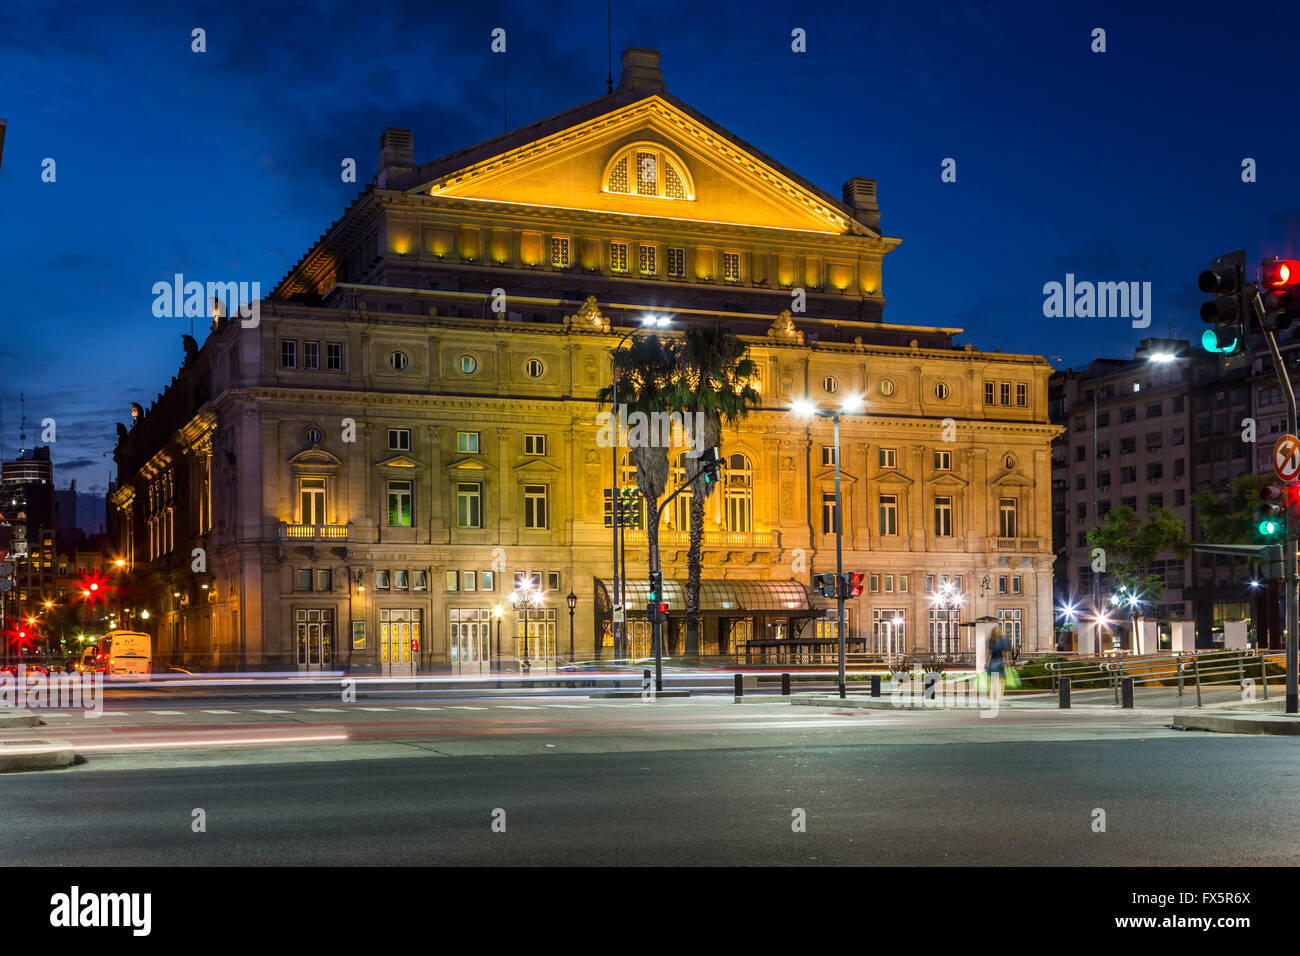 Le théâtre Colon illuminée la nuit à Buenos Aires, Argentine, Amérique du Sud. Banque D'Images